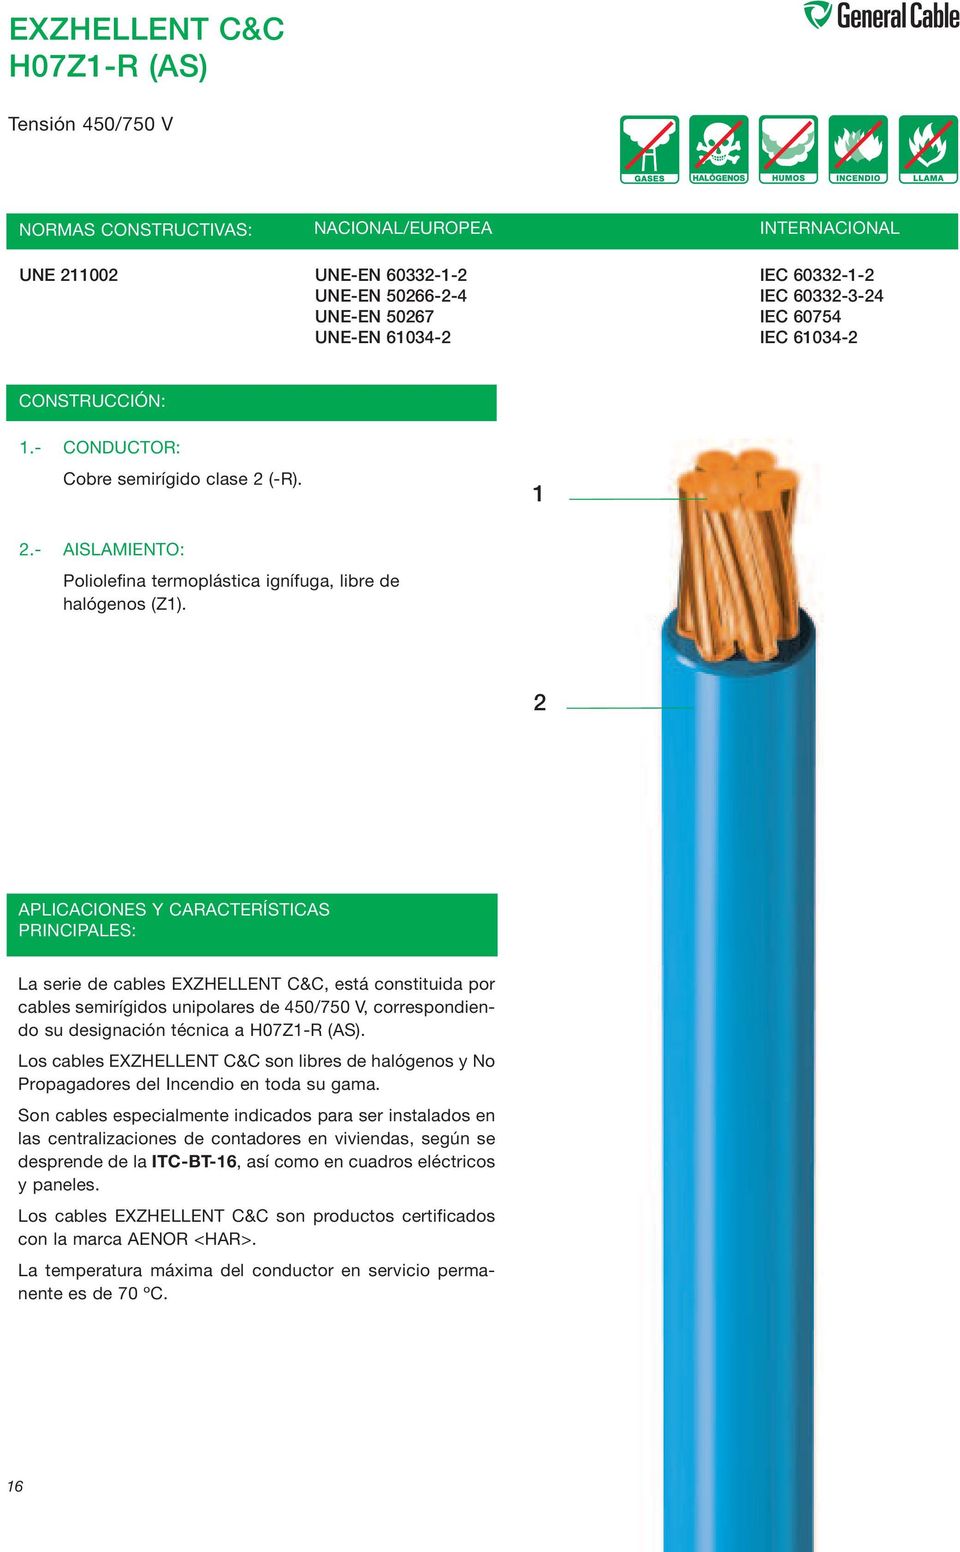 2 APLICACIONES Y CARACTERÍSTICAS PRINCIPALES: La serie de cables EXZHELLENT C&C, está constituida por cables semirígidos unipolares de 450/750 V, correspondiendo su designación técnica a H07Z1-R (AS).